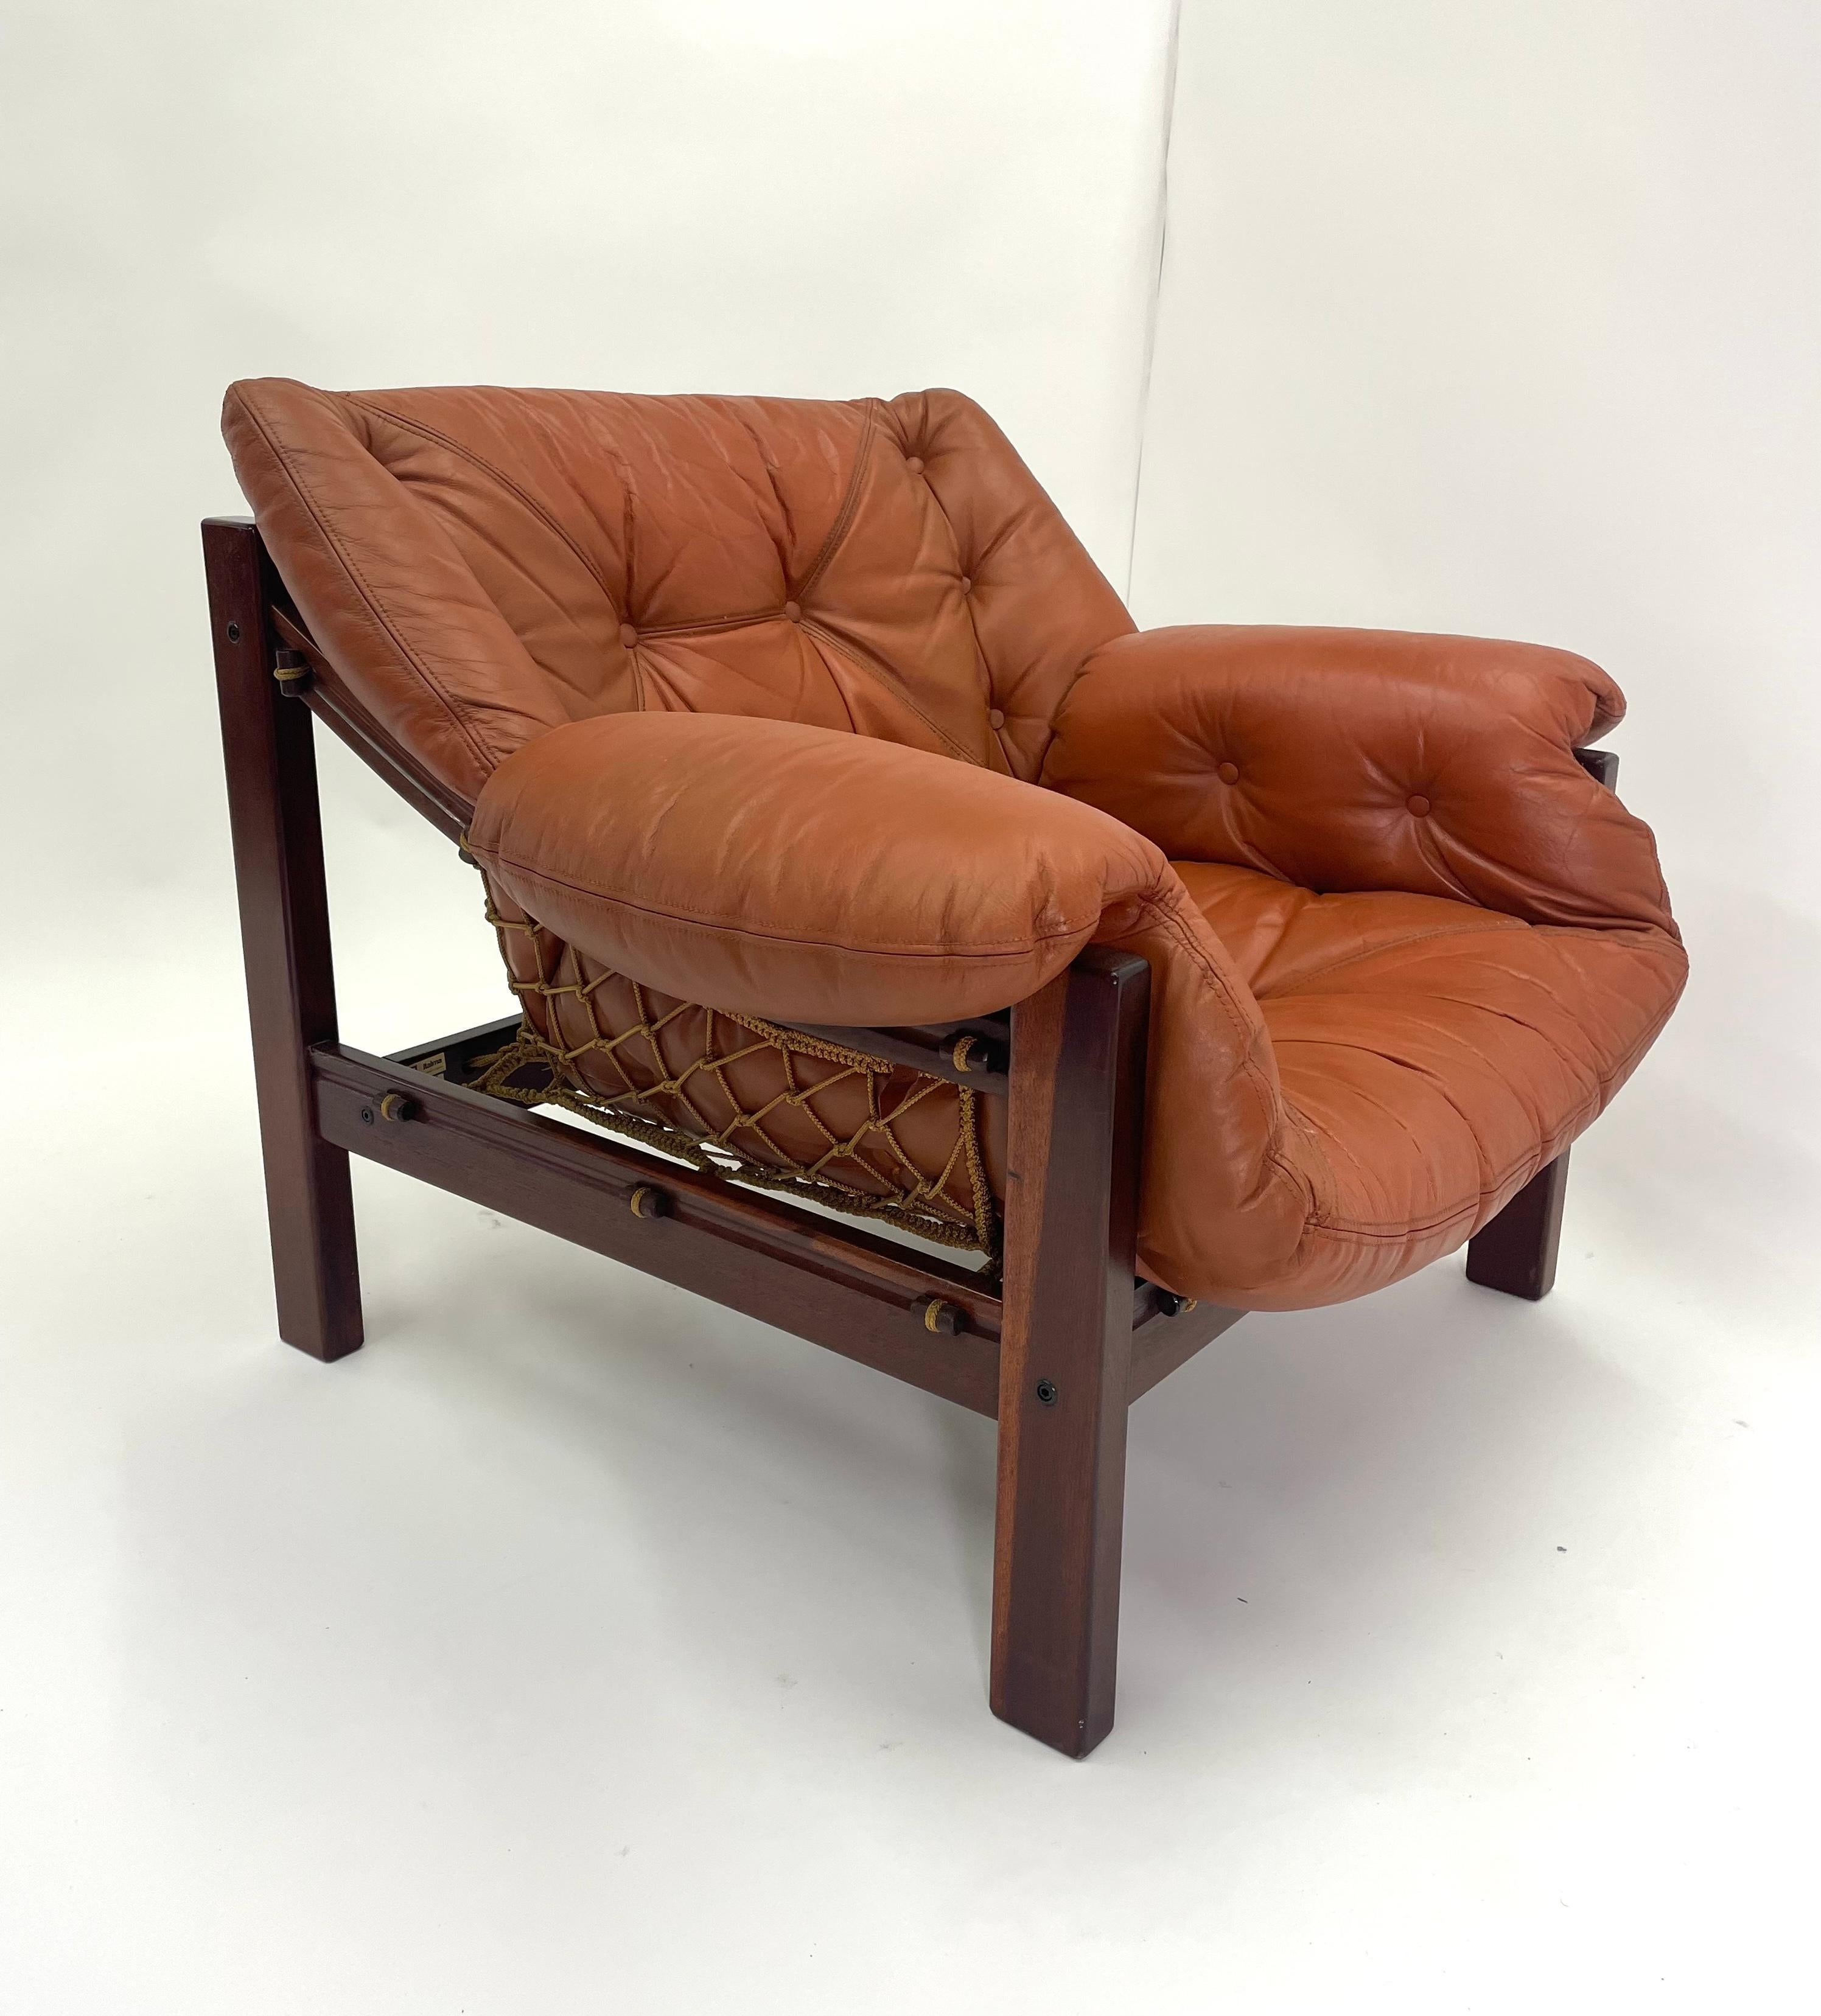 Der brasilianische Jangada-Stuhl mit Ottomane, entworfen von Jean Gillon, verkörpert die Essenz von Komfort und Raffinesse mit einem deutlichen Hauch von brasilianischer Handwerkskunst. Inspiriert von den traditionellen Fischerbooten des Nordostens